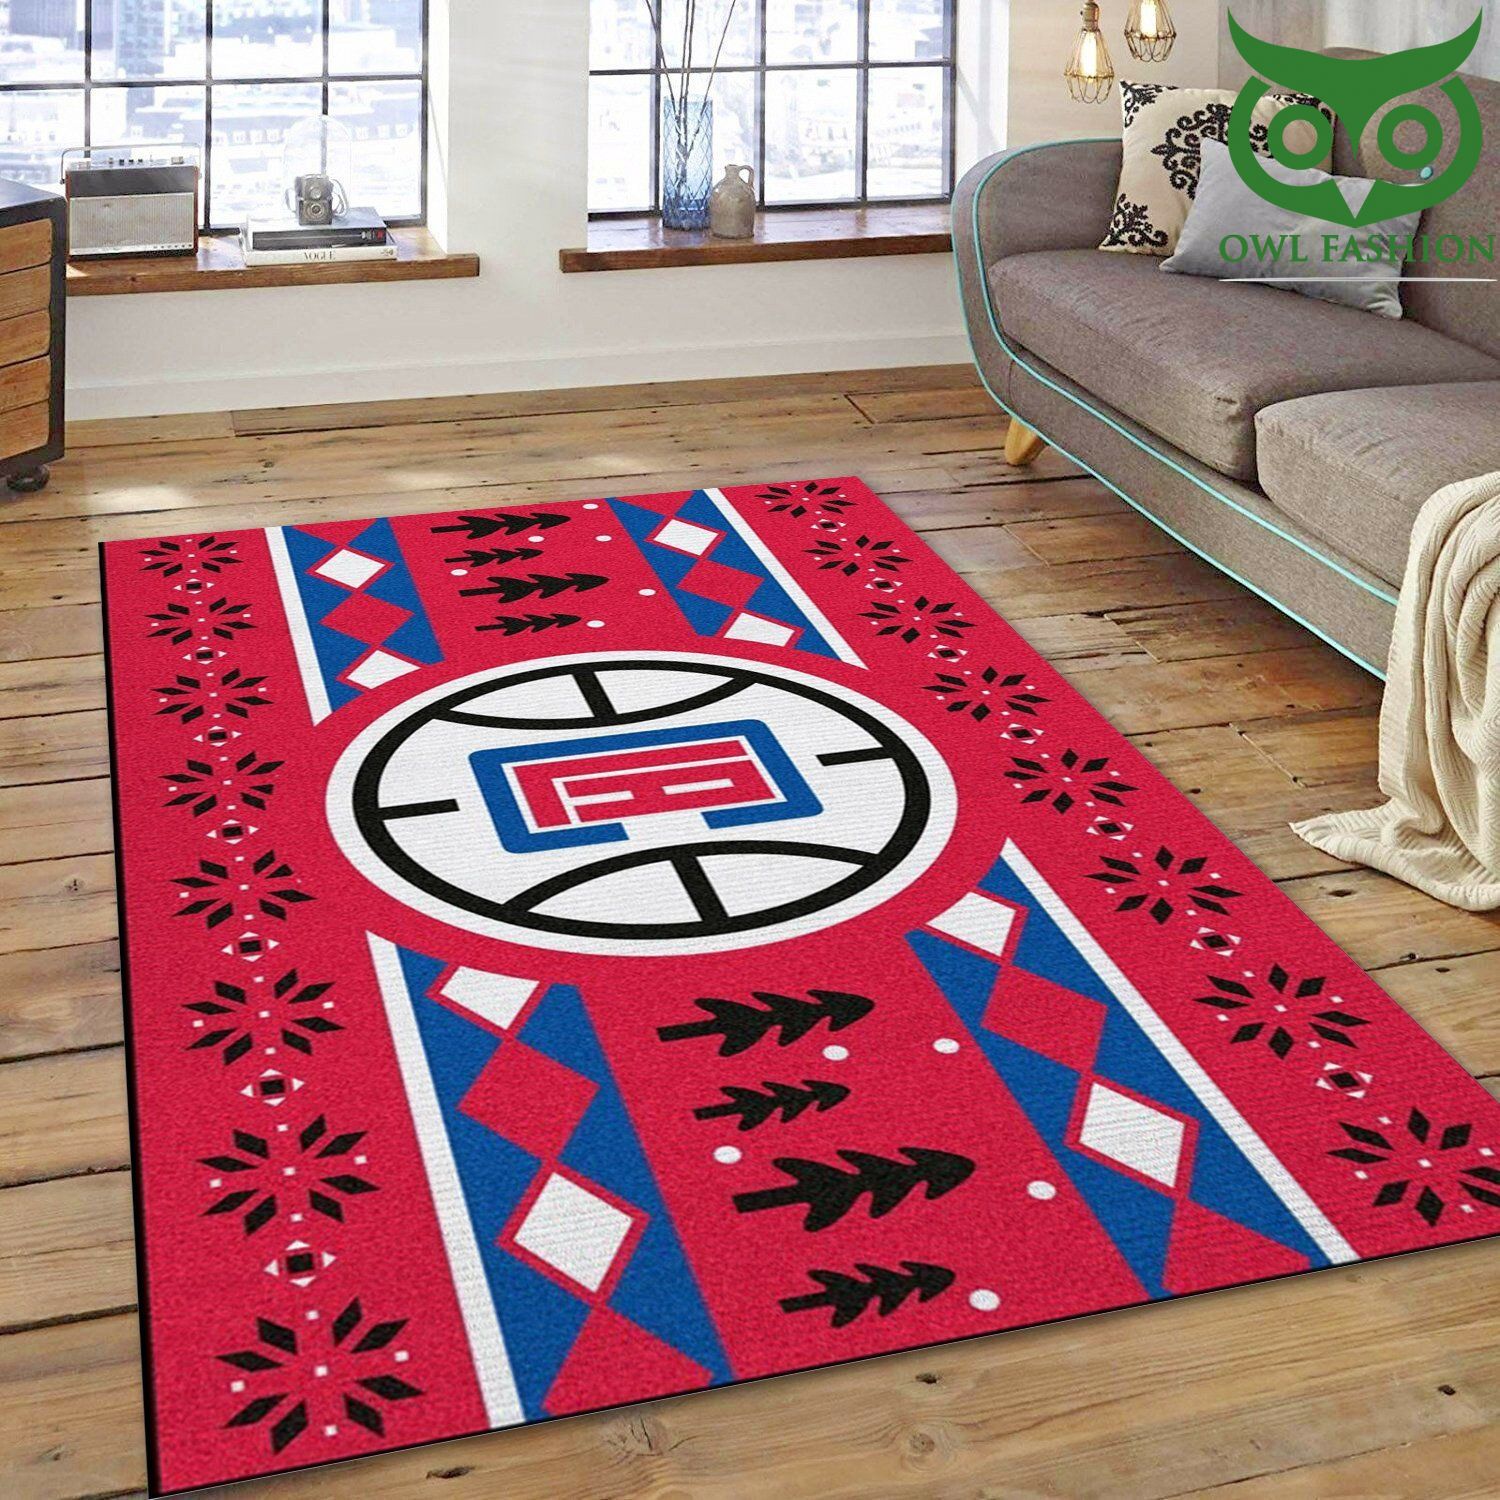 La Clippers 9 NBA carpet rug Home and floor Decor